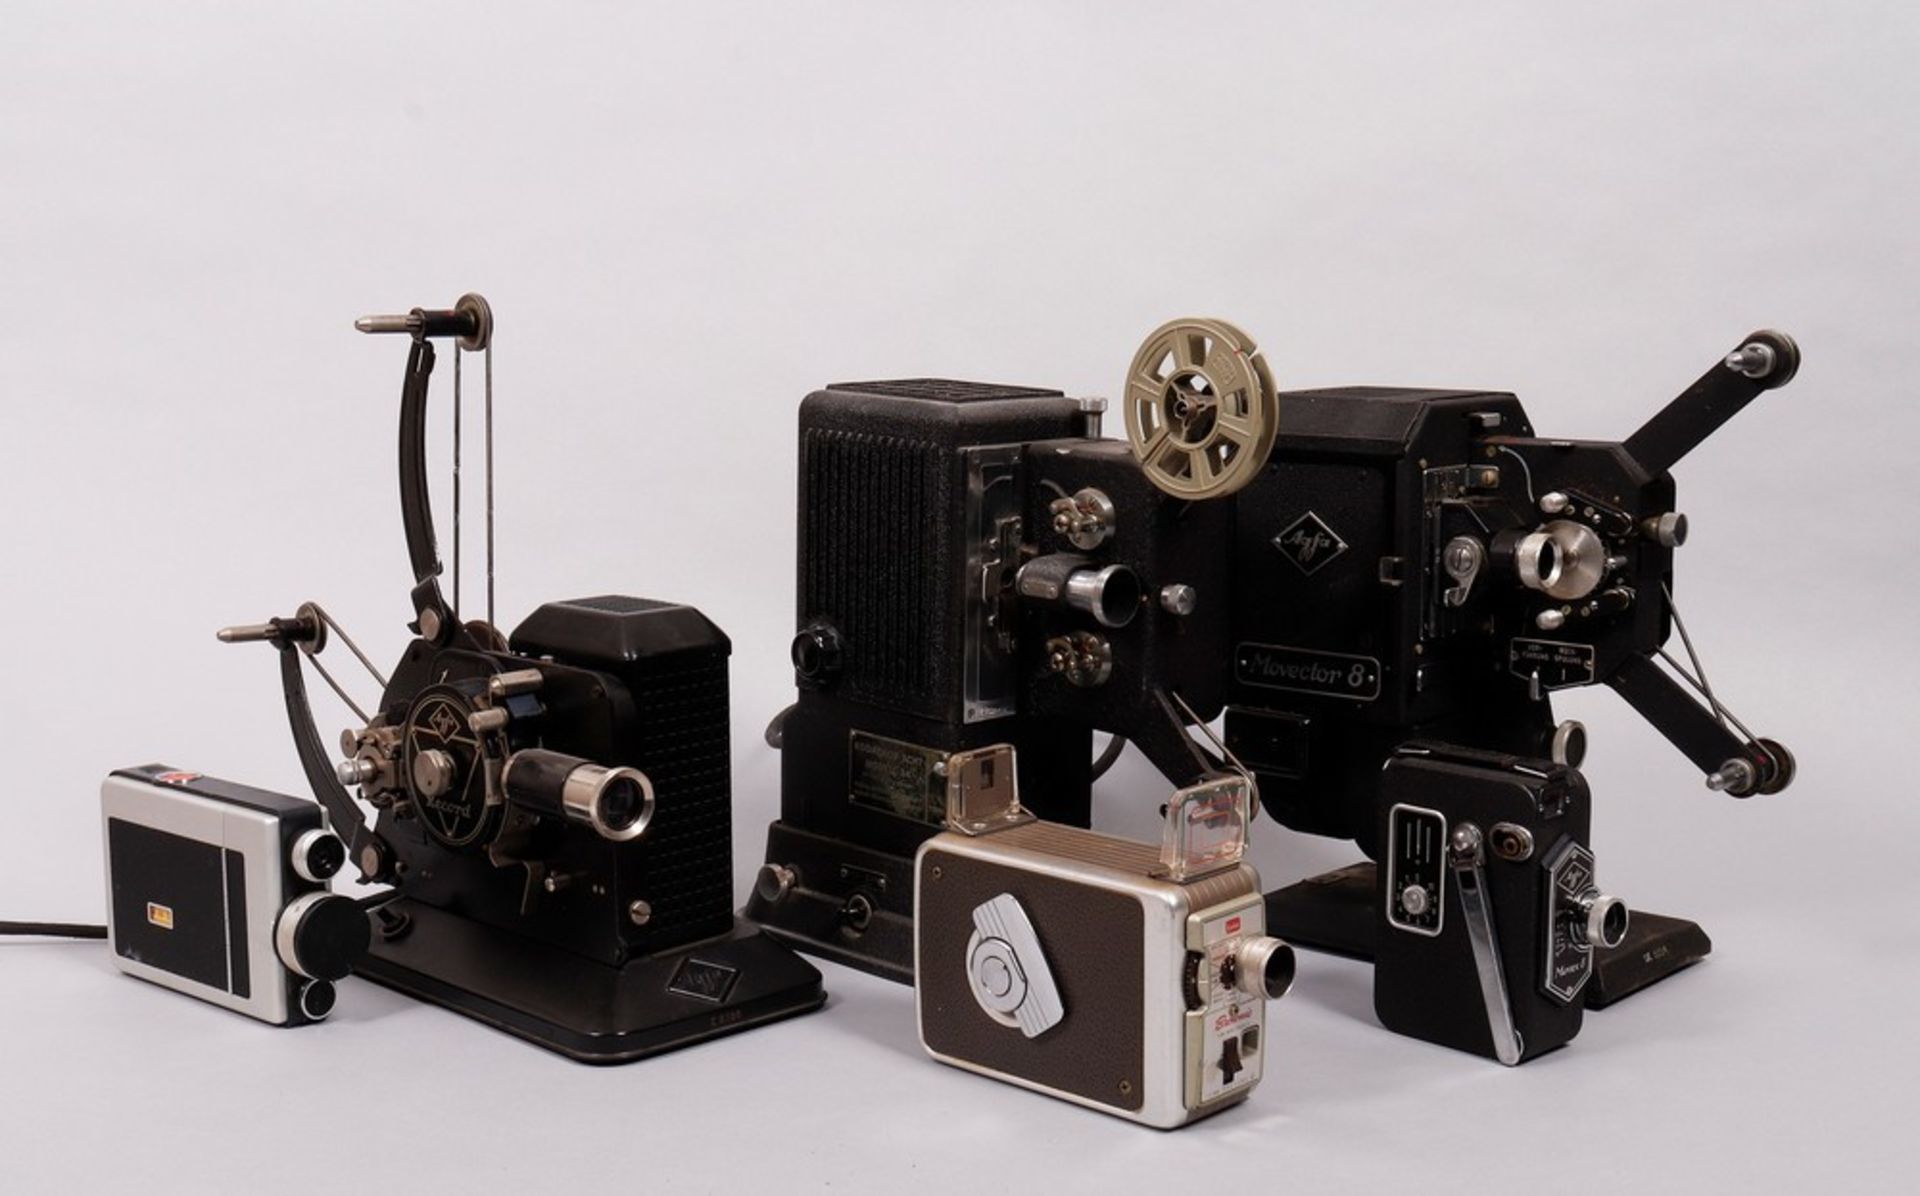 3 8mm film cameras and 3 projectors, Agfa / Kodak, 1st half 20th C.